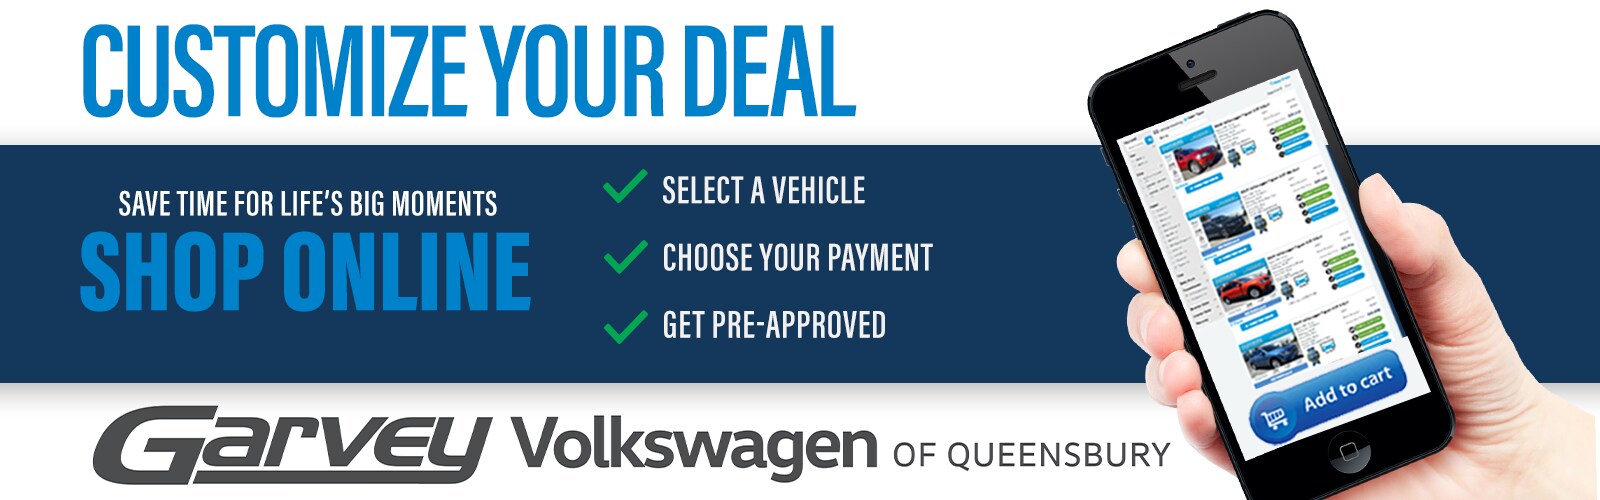 Customize Your Deal Garvey Volkswagen banner